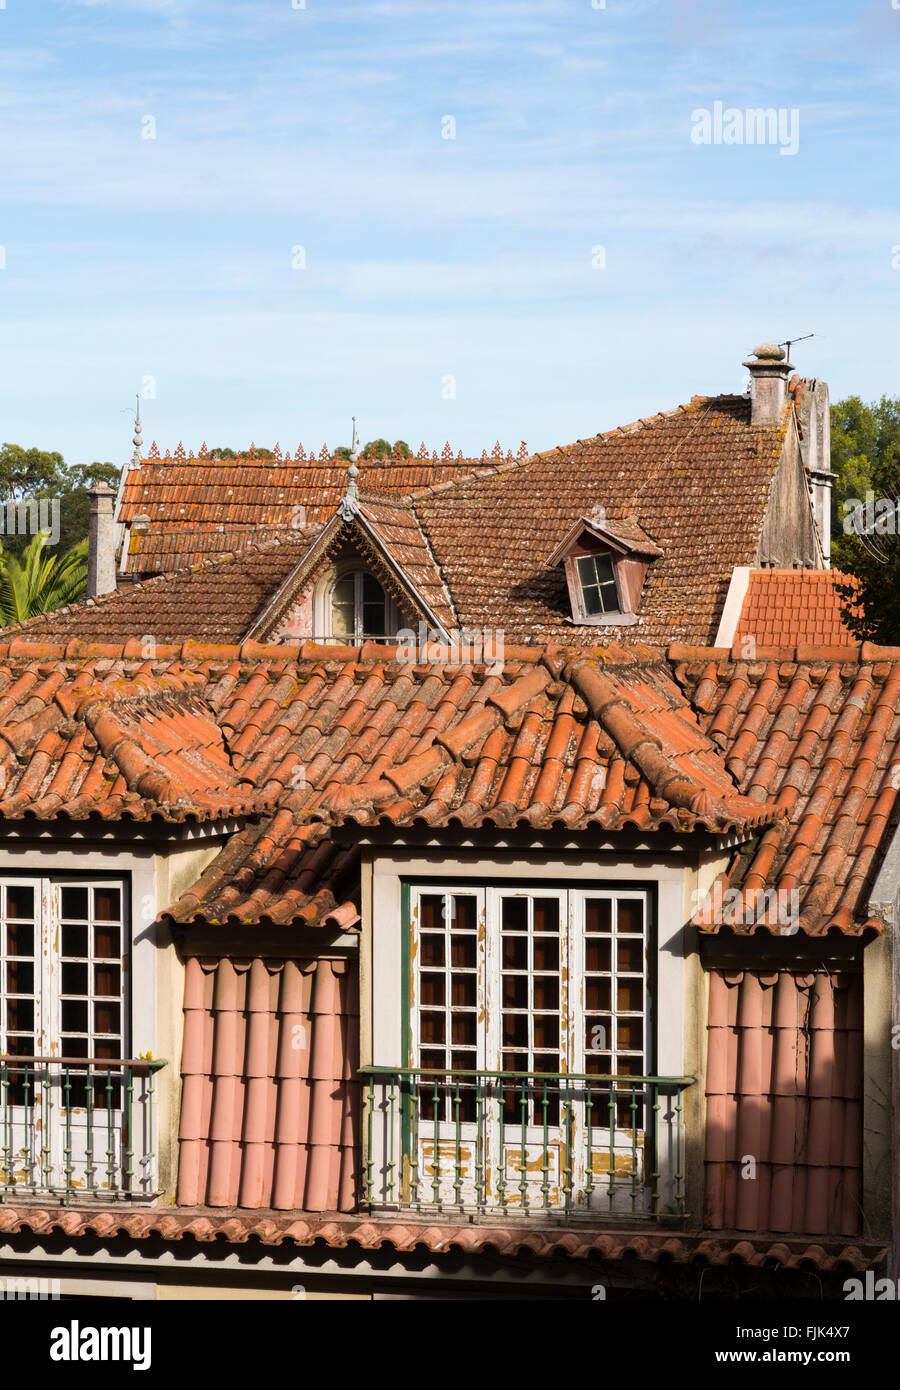 Vieux toits de tuiles rouges typiques à Sintra, Portugal. L'architecture historique local sites de voyage. Banque D'Images